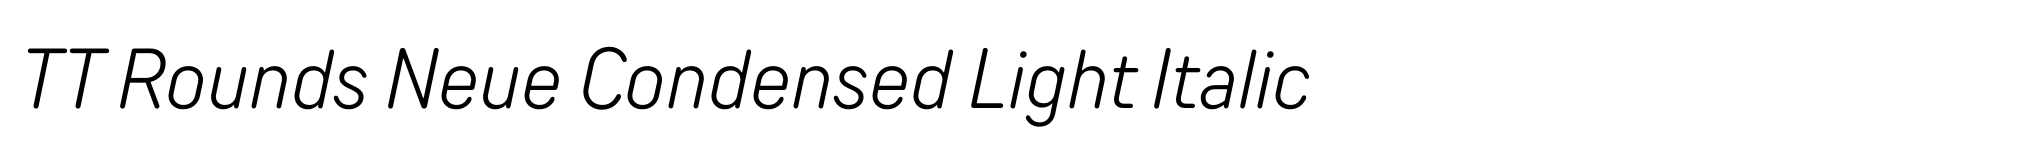 TT Rounds Neue Condensed Light Italic image